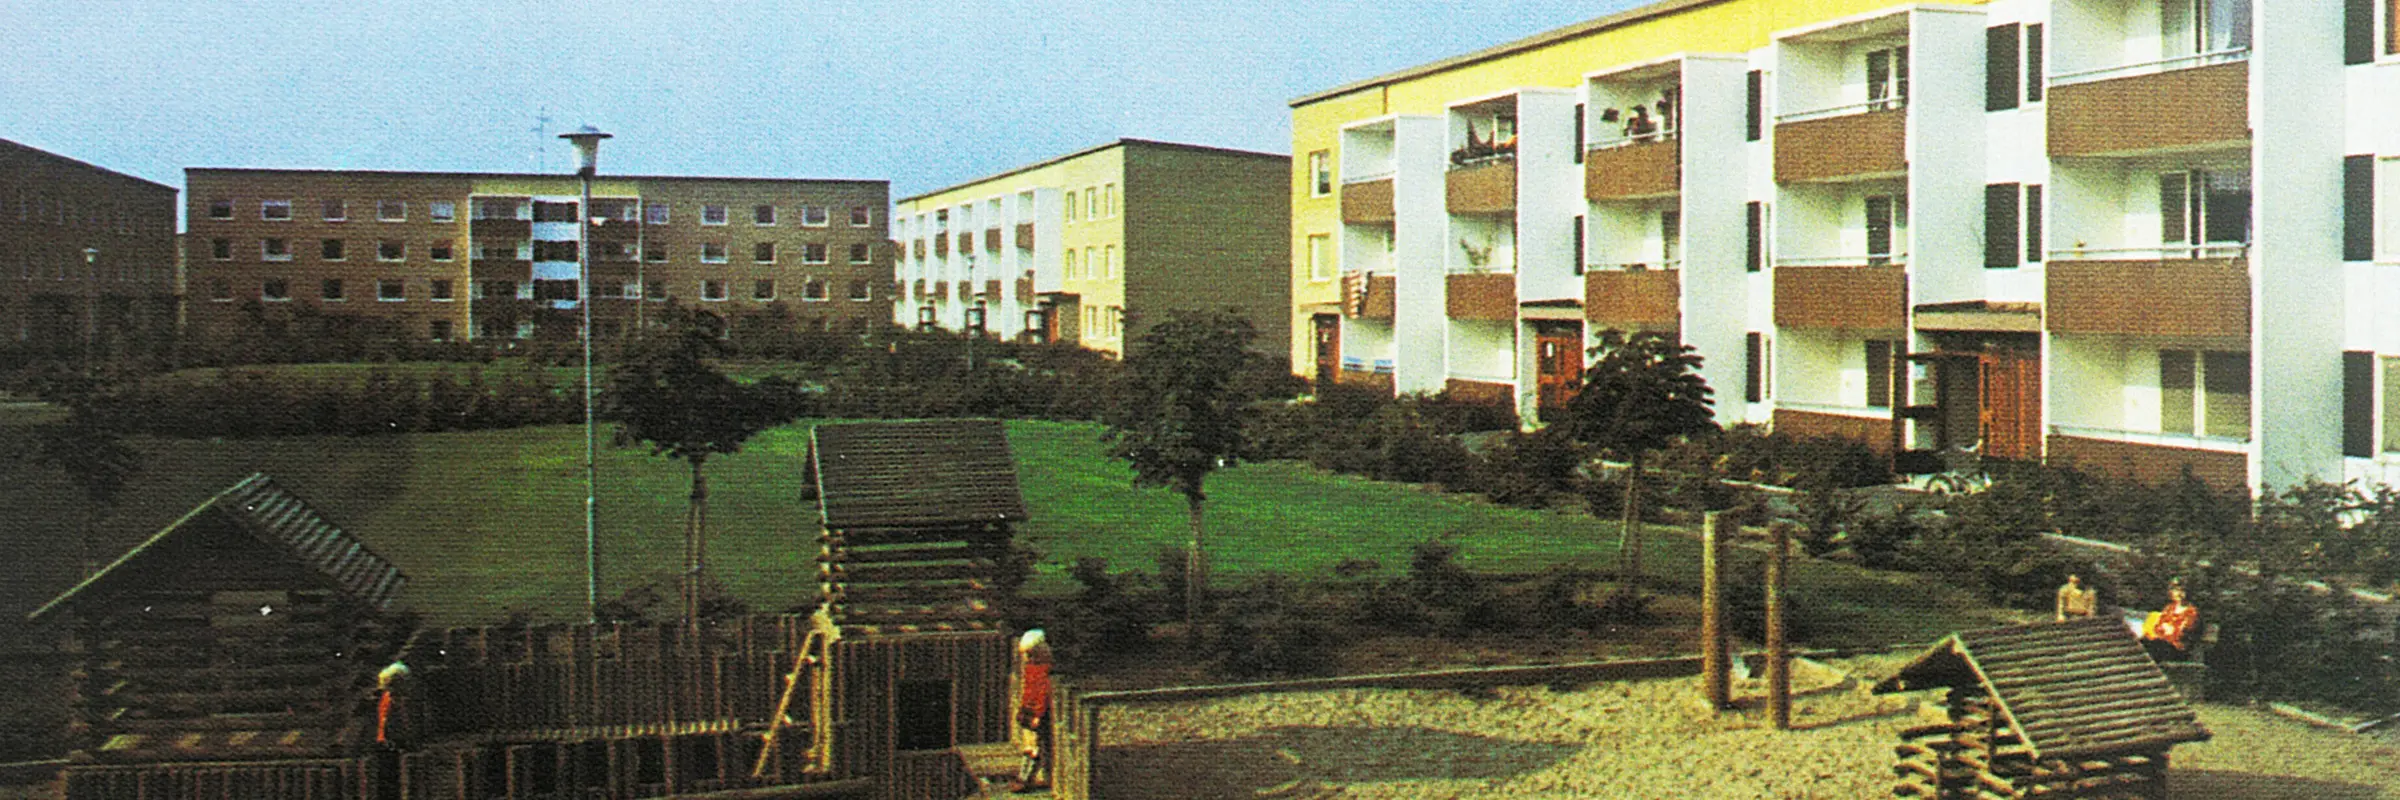 Bild tagen 1974 på hus på Gamlegården med en stor grön gräsmatta och lekplats i mitten av gården